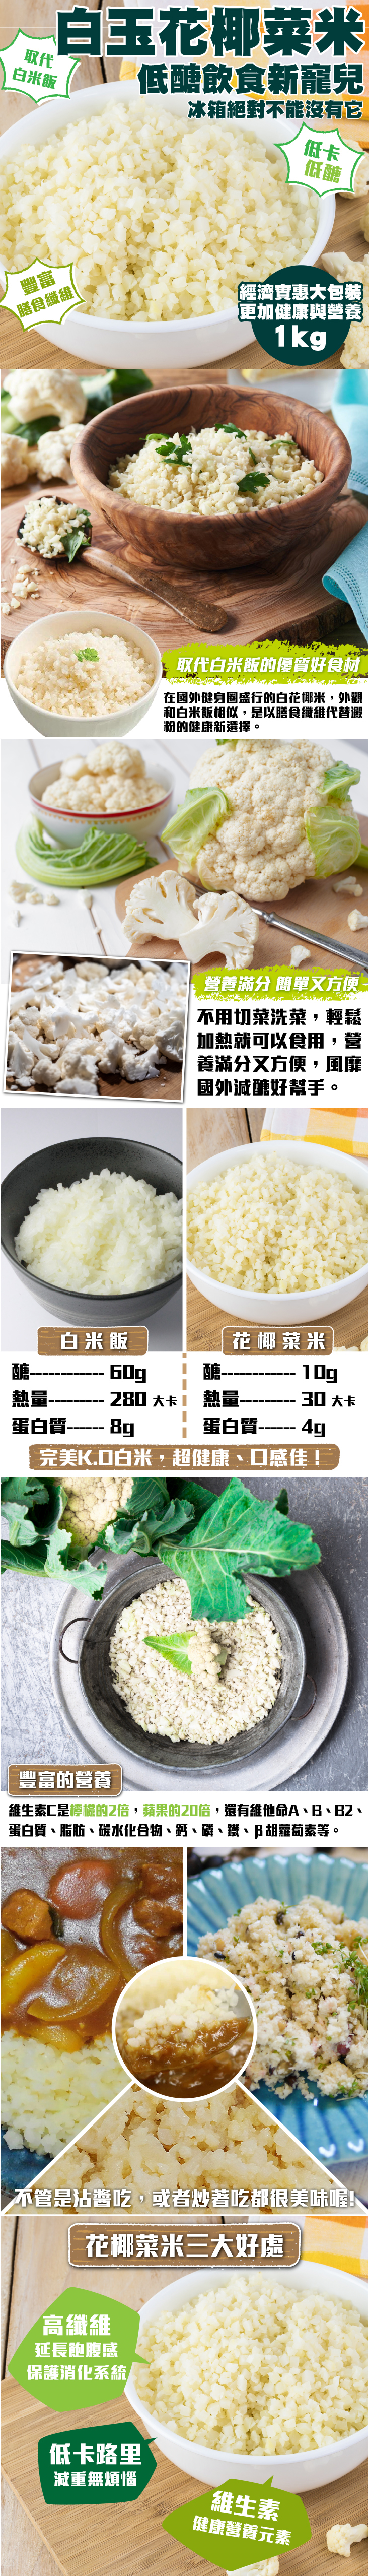 【海肉管家】鮮凍花椰菜米調理包1000g 零澱粉 低醣低卡